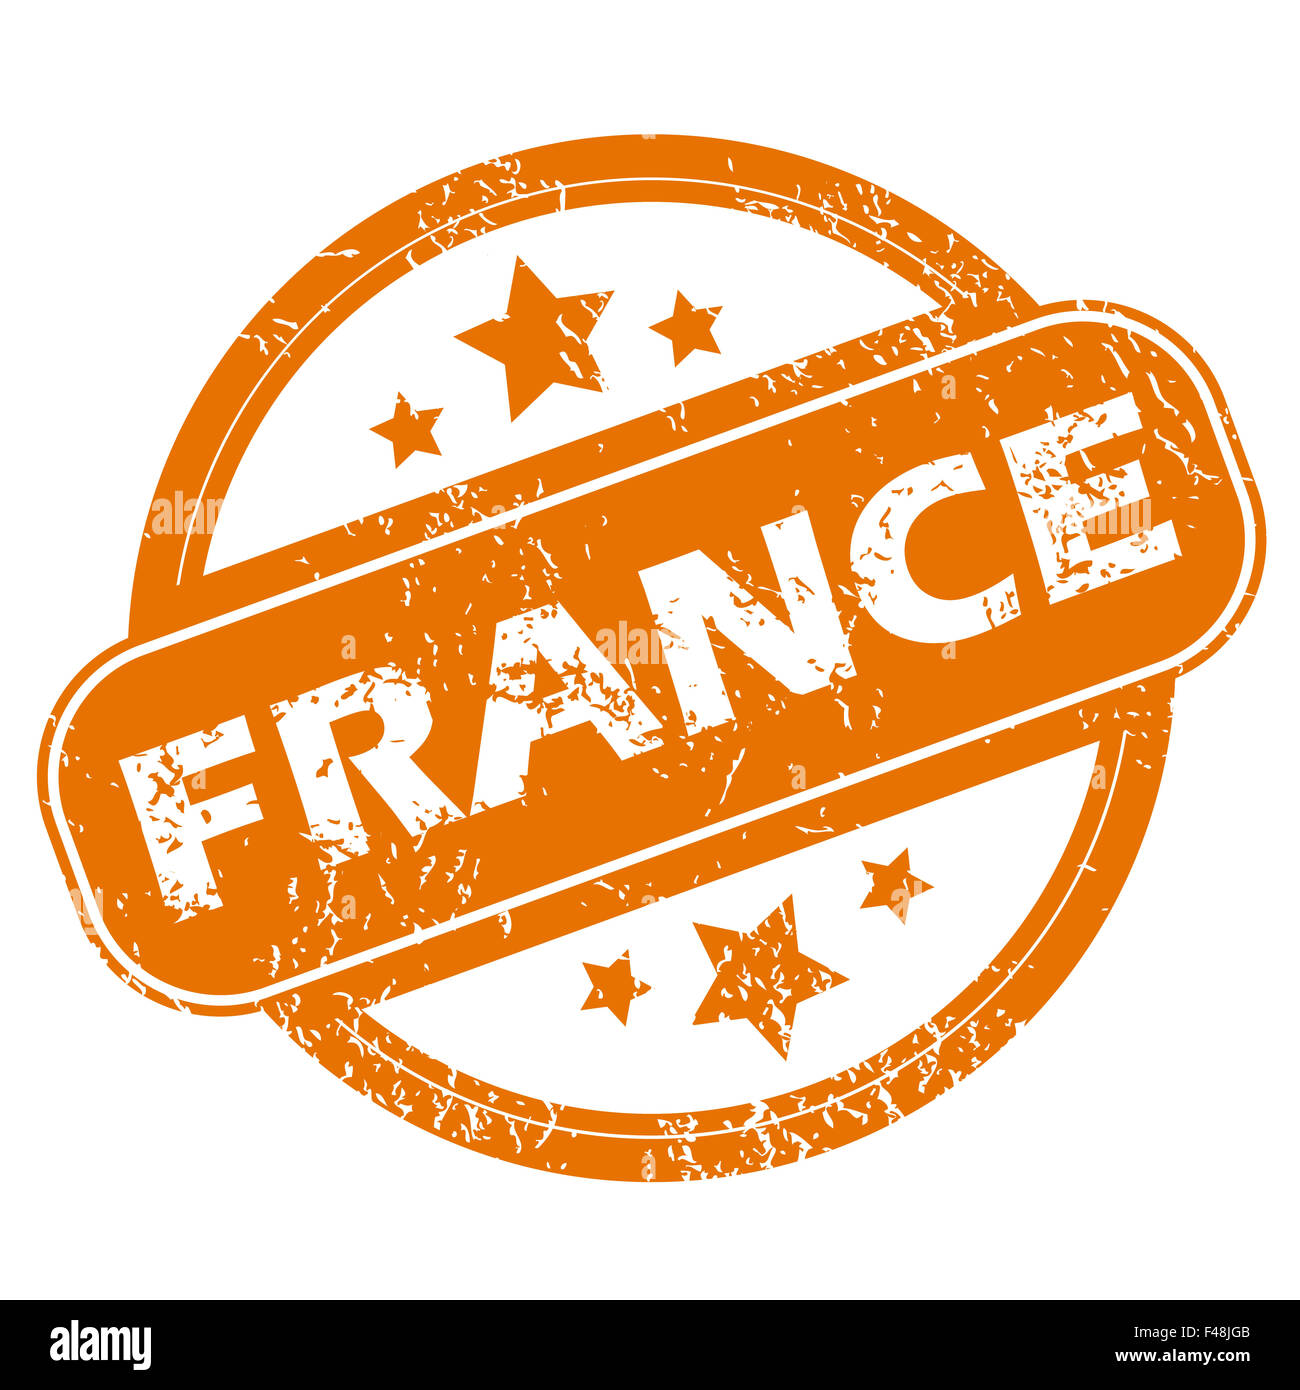 France grunge icon Stock Photo